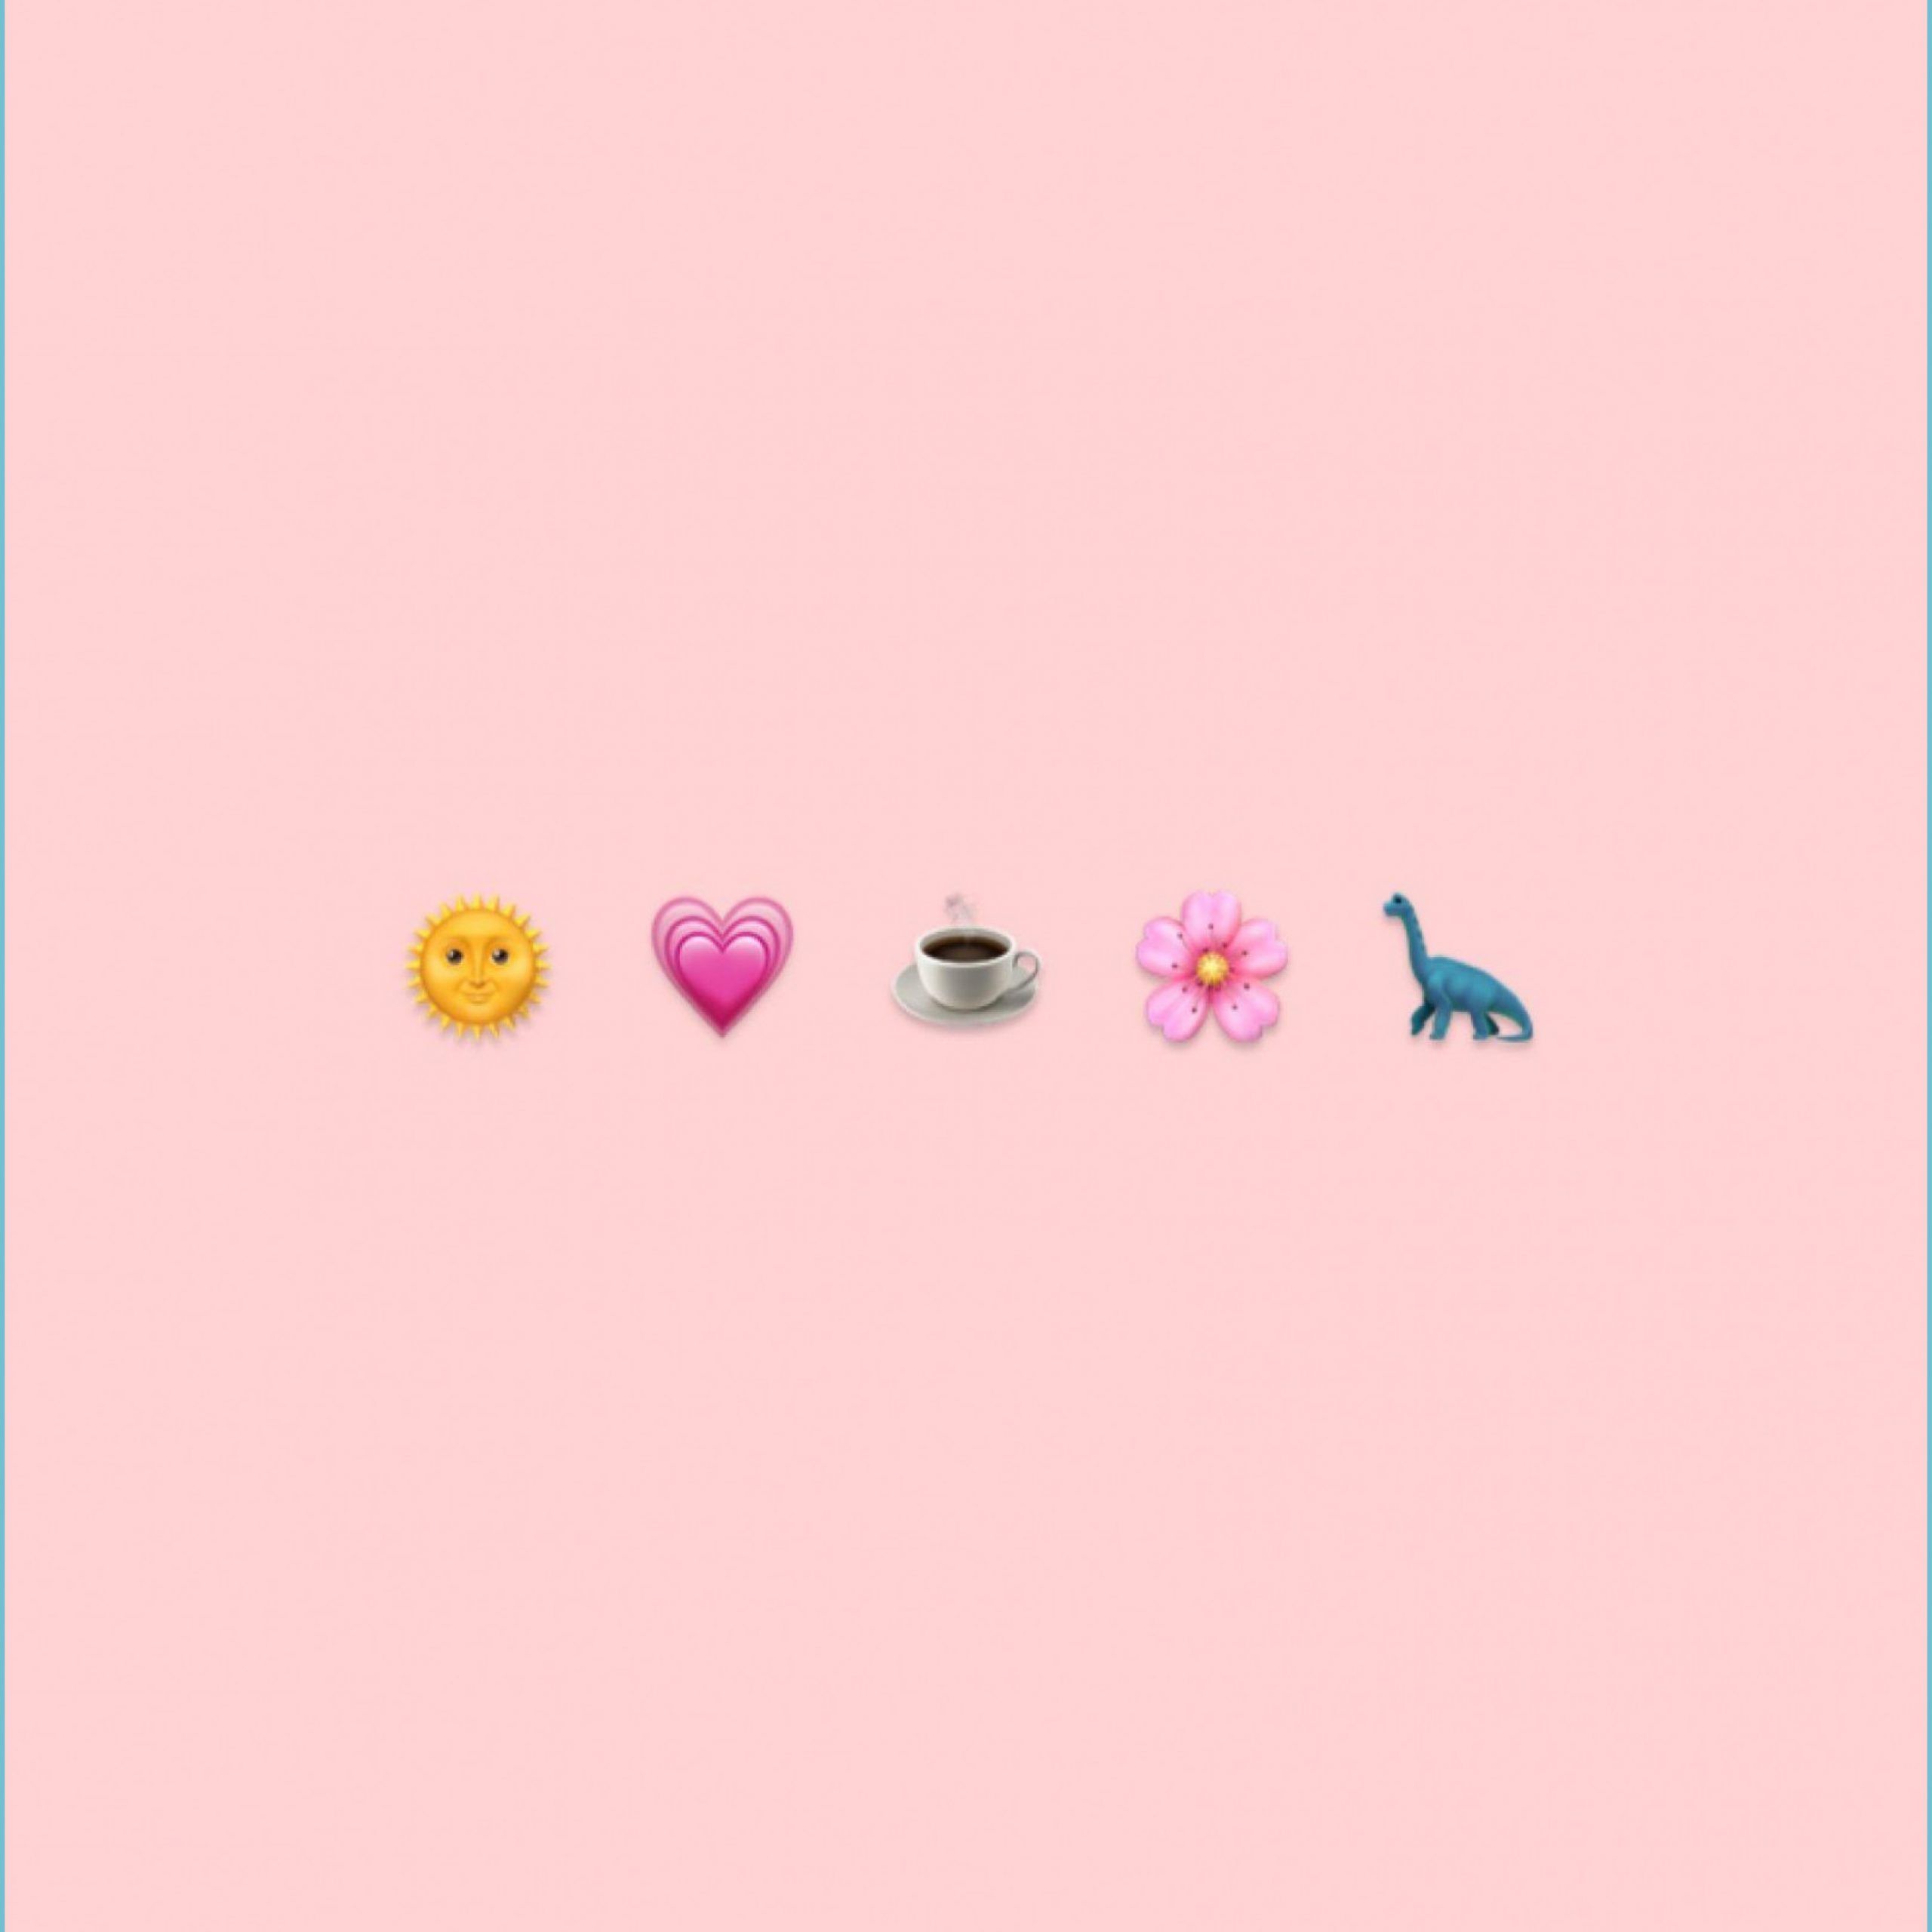 Emojis on a pink background - Cute, pretty, Emoji